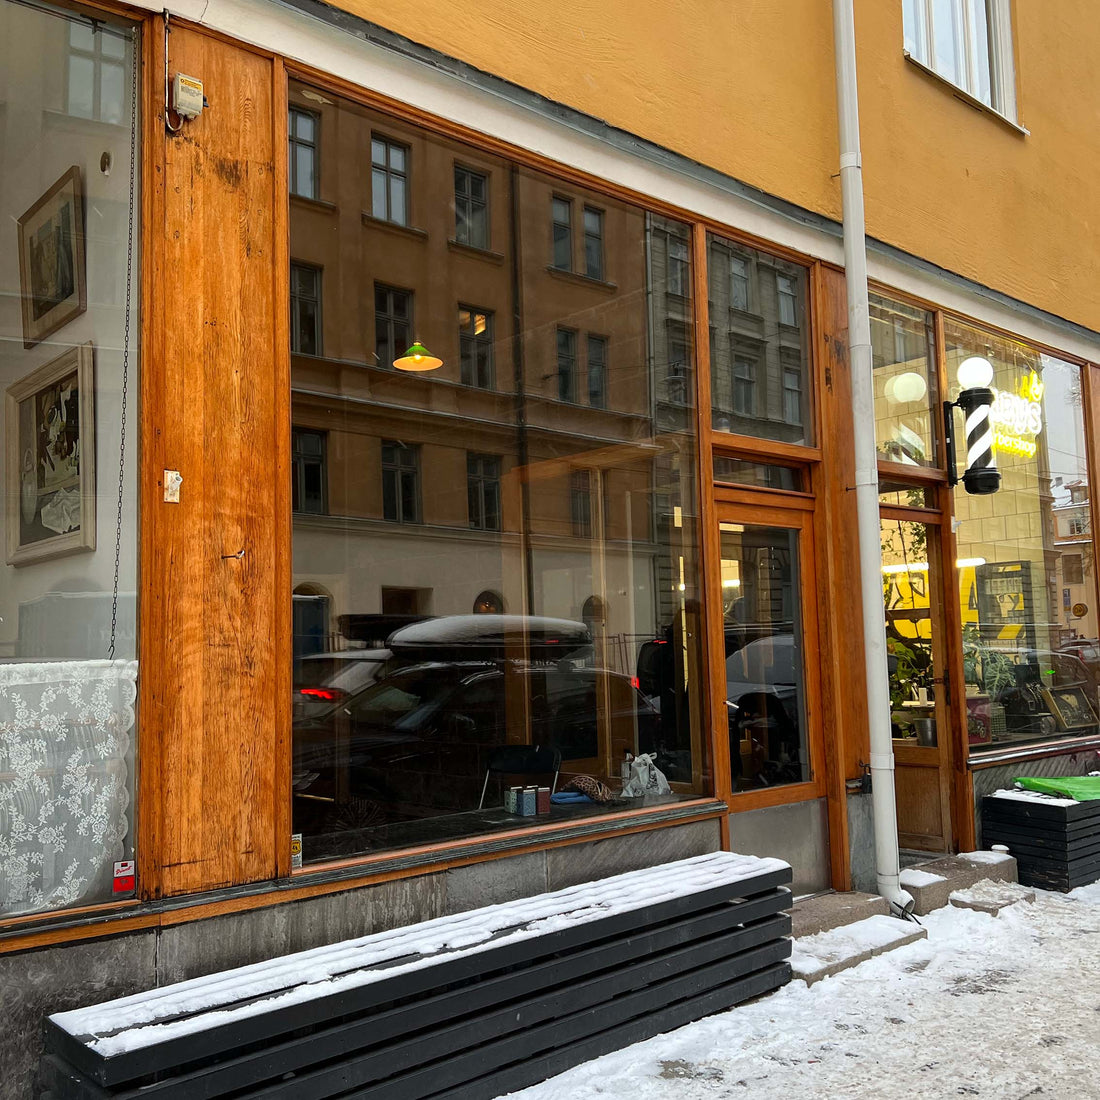 Tea shop in Stockholm